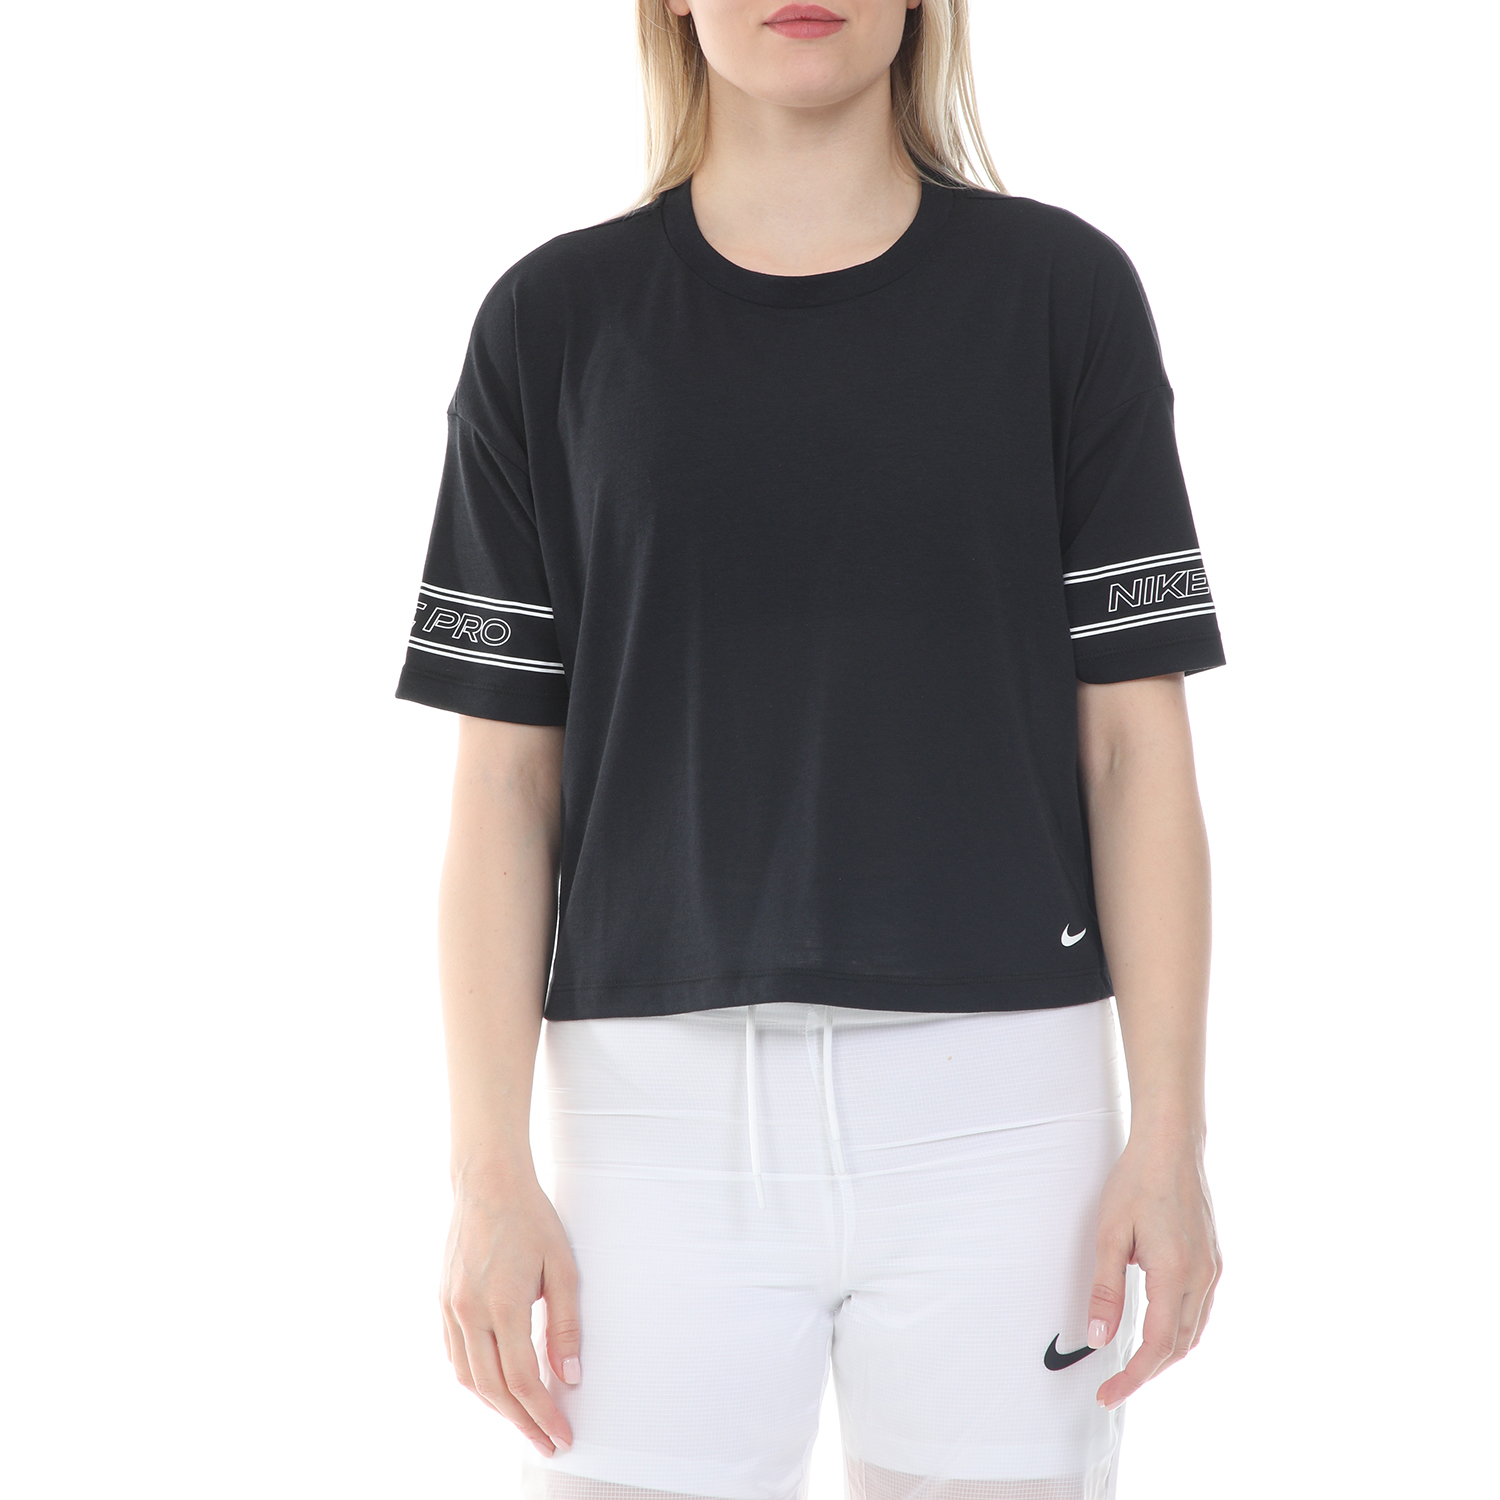 Γυναικεία/Ρούχα/Αθλητικά/T-shirt-Τοπ NIKE - Γυναικεία cropped μπλούζα NIKE NP TOP SS GRX SU20 μαύρη